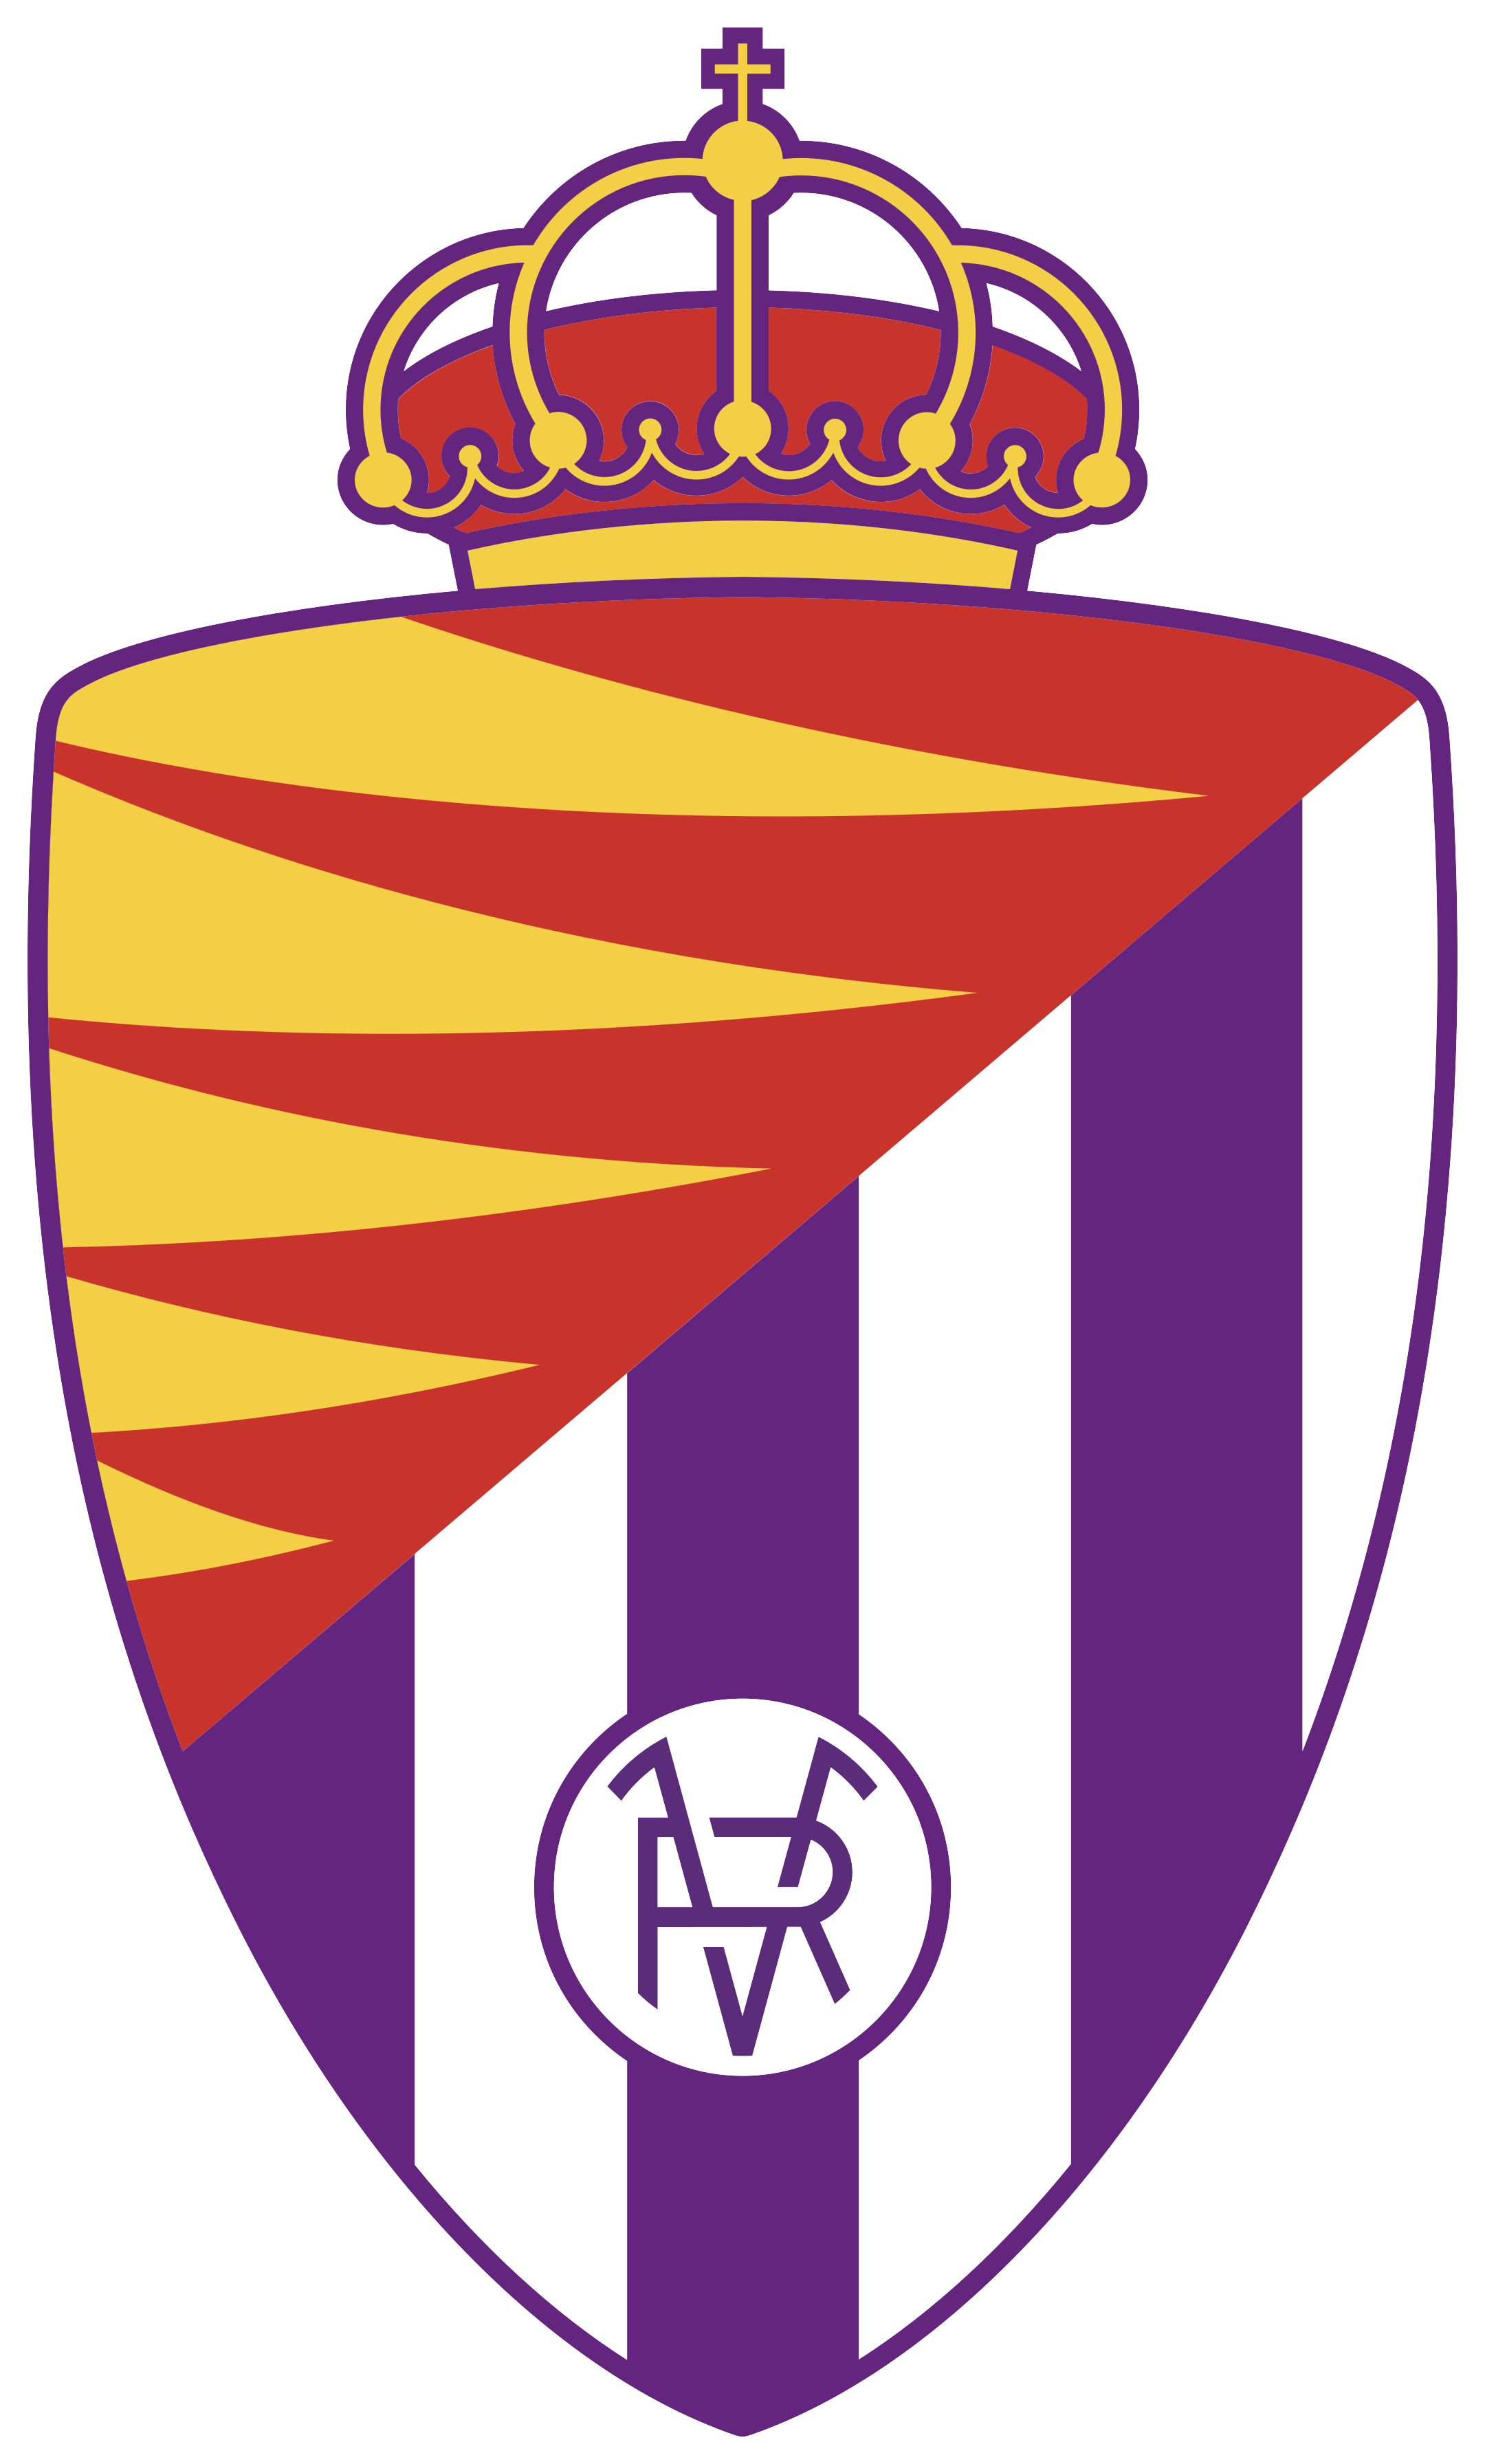 real valladolid logo 1 - Real Valladolid Logo